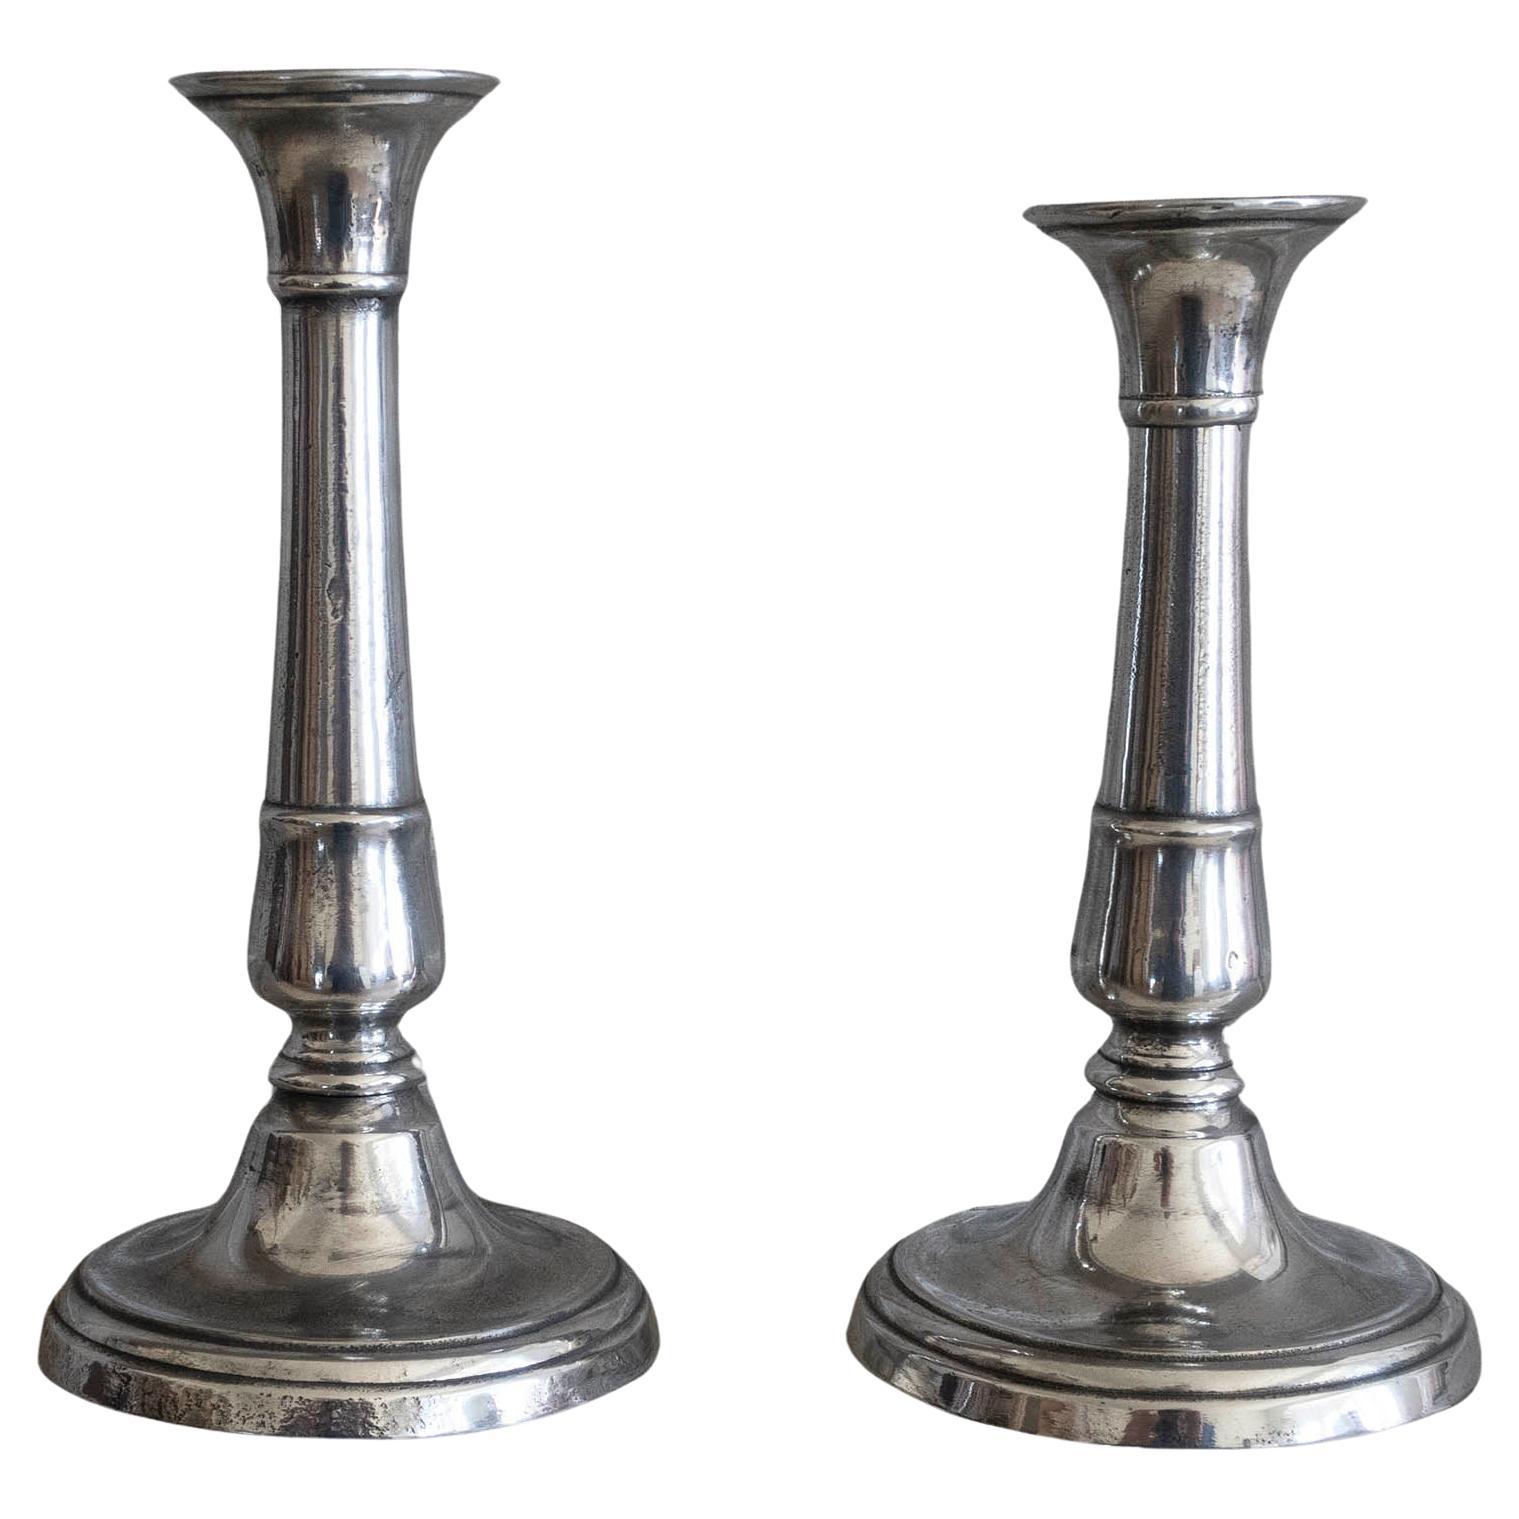 Paire de chandeliers de style gustavien en étain, anglais, vers 1800